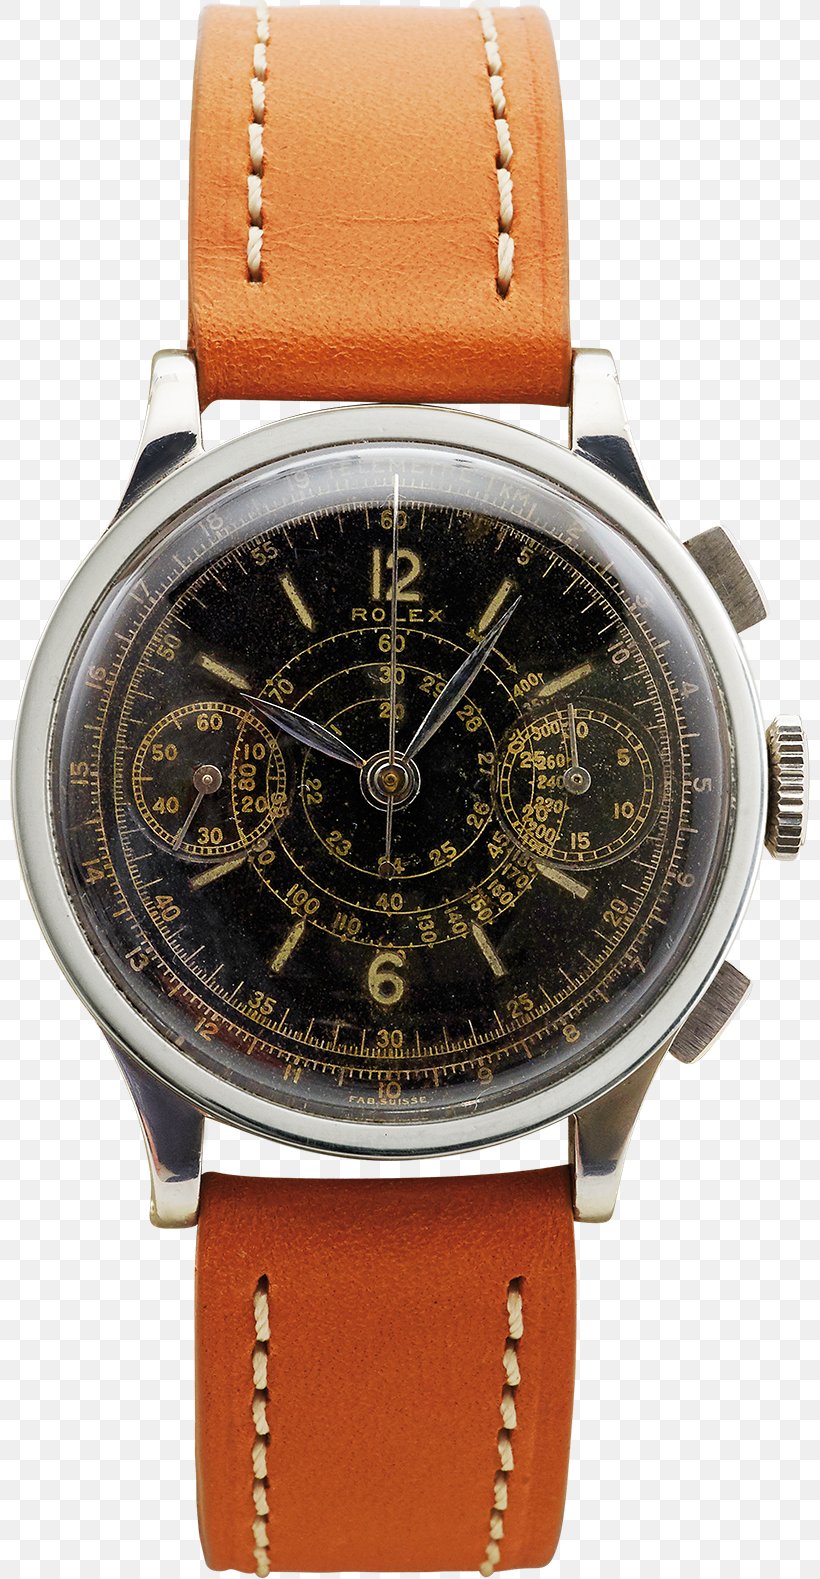 Rolex Milgauss Rolex Submariner Watch Chronograph, PNG, 800x1579px, Rolex Milgauss, Brand, Brown, Casio, Chronograph Download Free